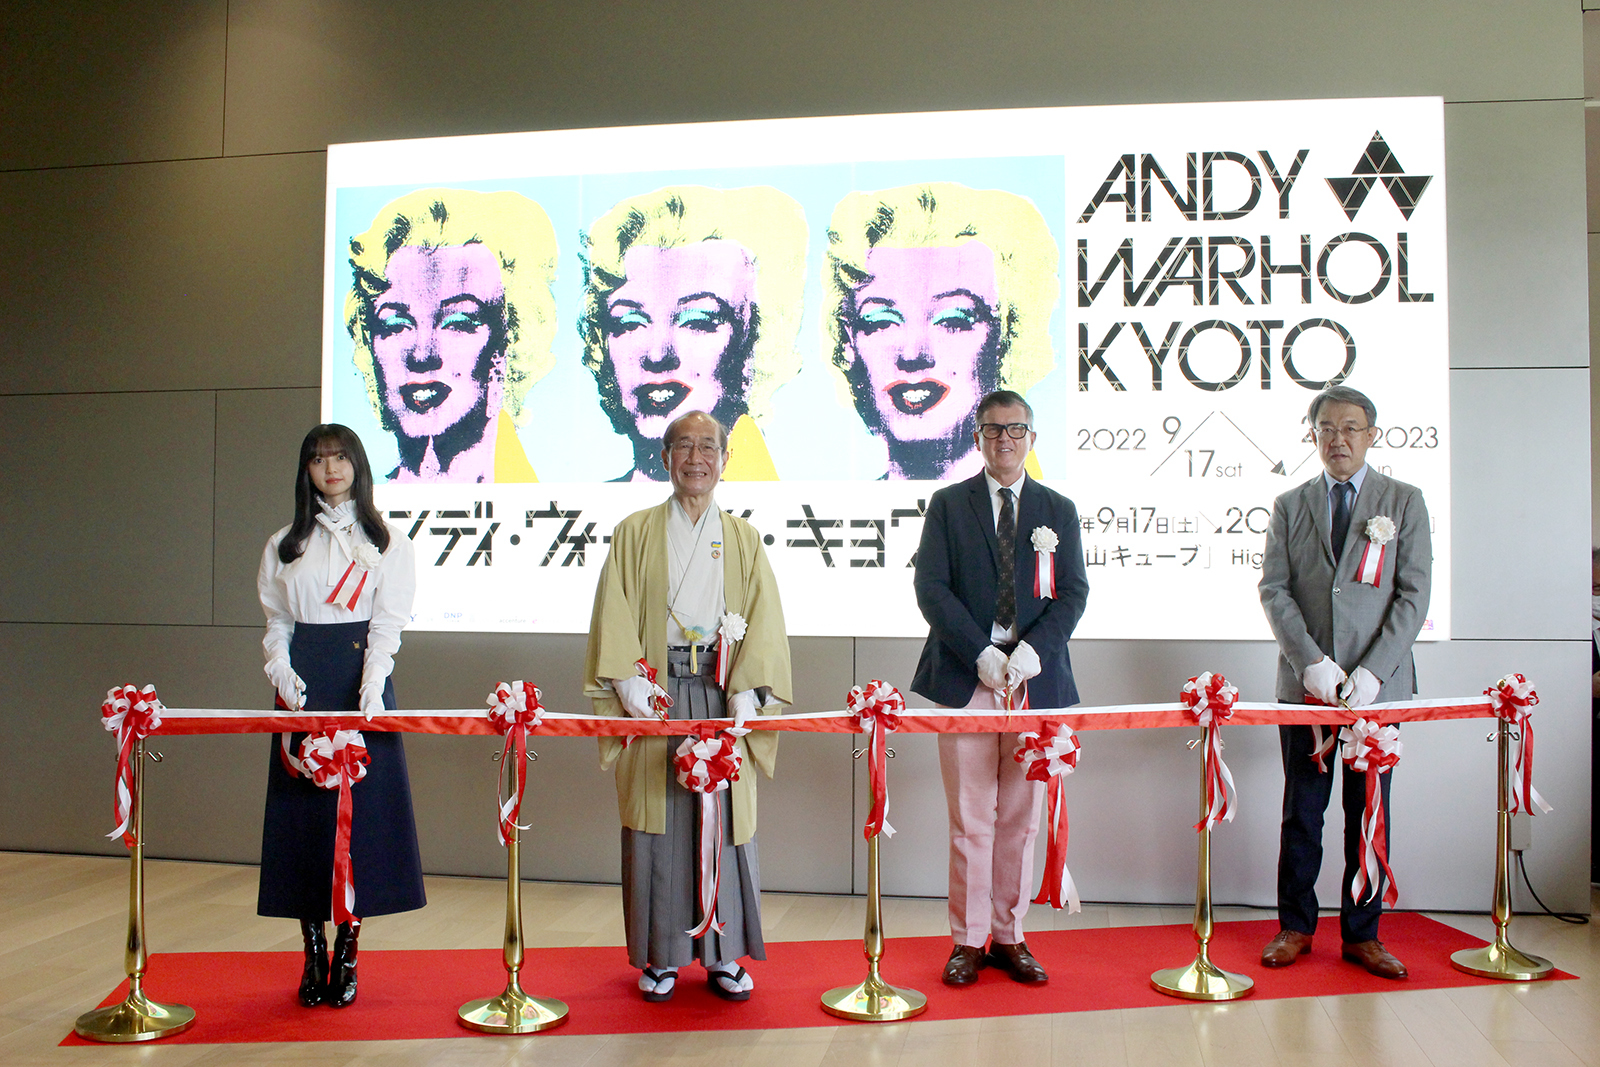 乃木坂46齋藤飛鳥も登壇した『アンディ・ウォーホル・キョウト』開会式レポート　京都にふさわしい、他では見ることのできないウォーホル展